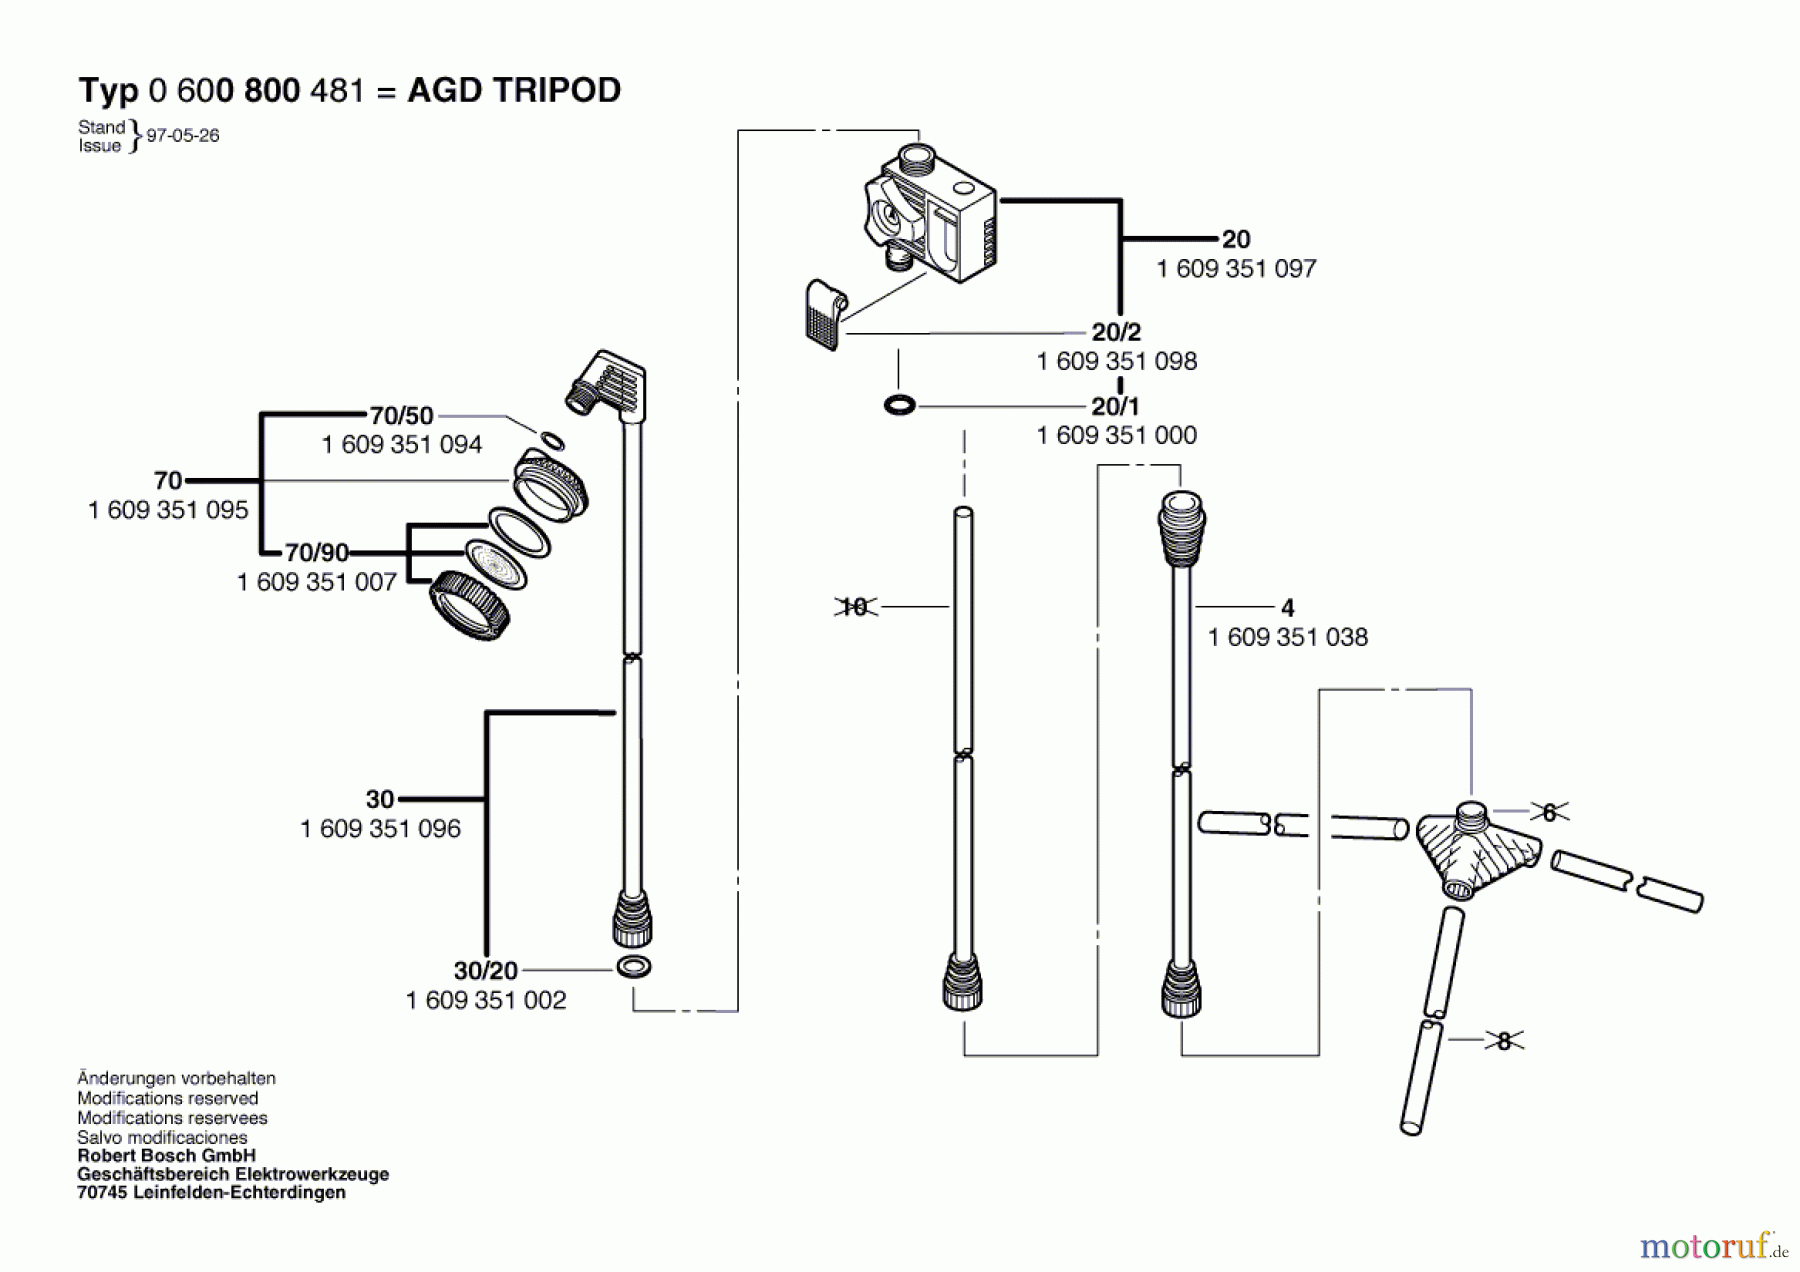  Bosch Wassertechnik Dusche AGD TRIPOD Seite 1